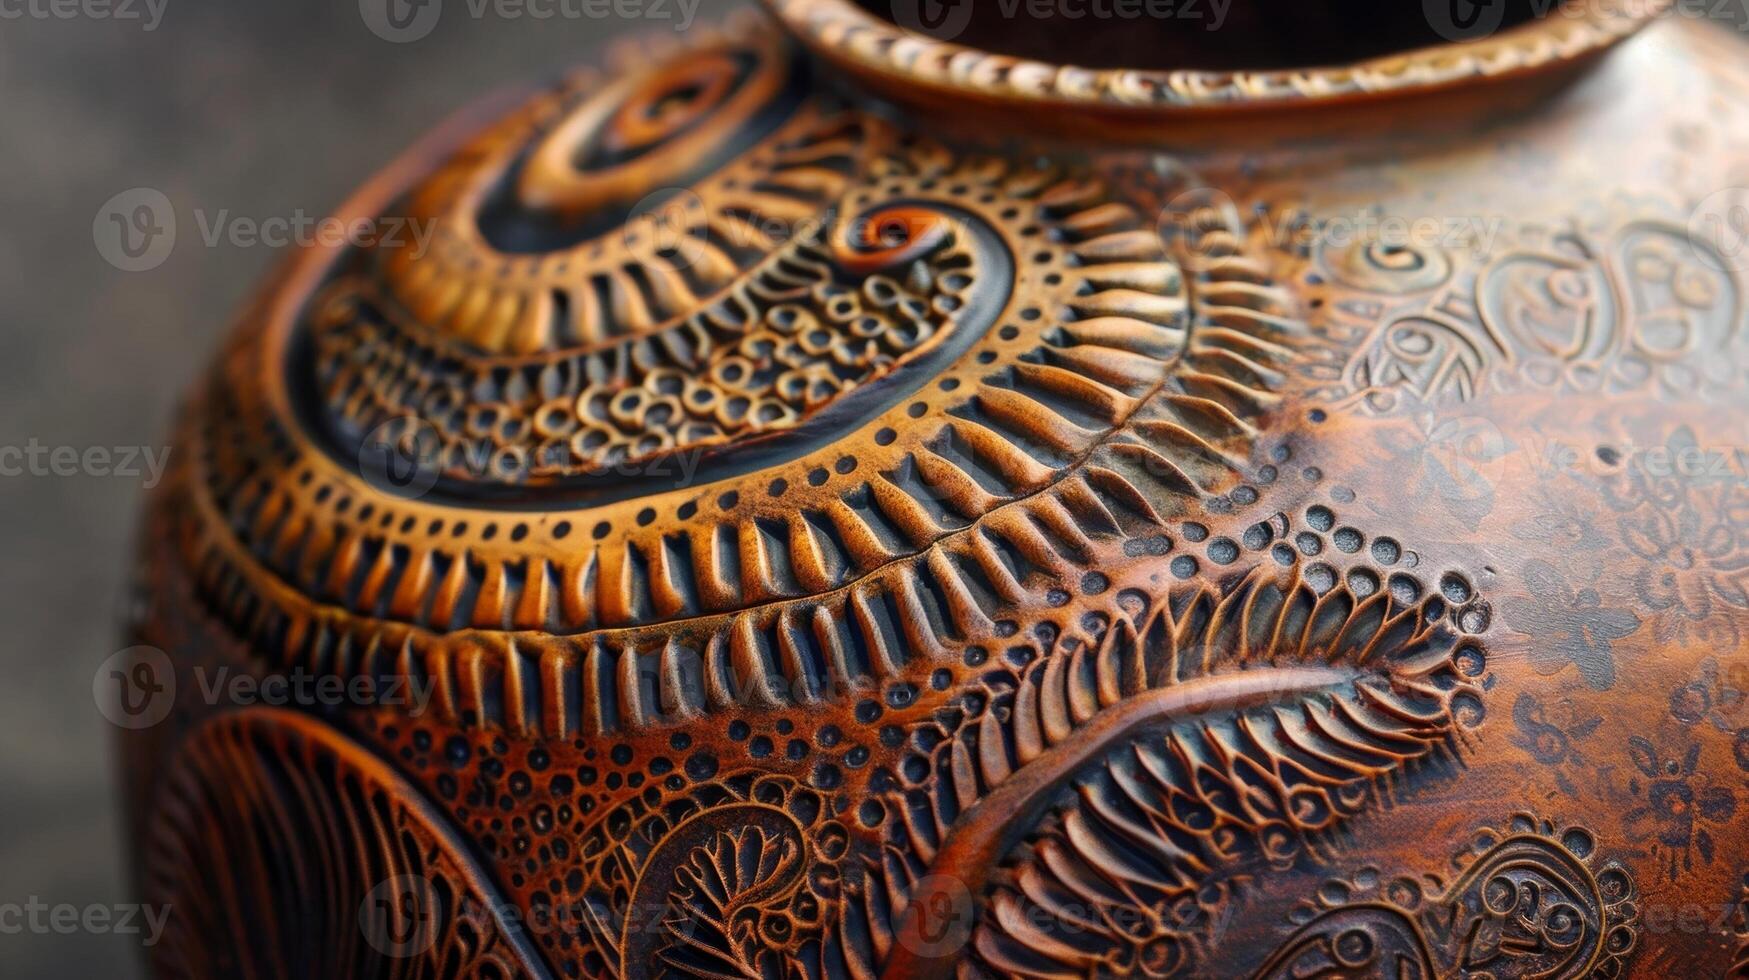 de invecklad mönster och mönster smyckande en spolbyggd vas som visar de krukmakare herravälde av de Metod. foto